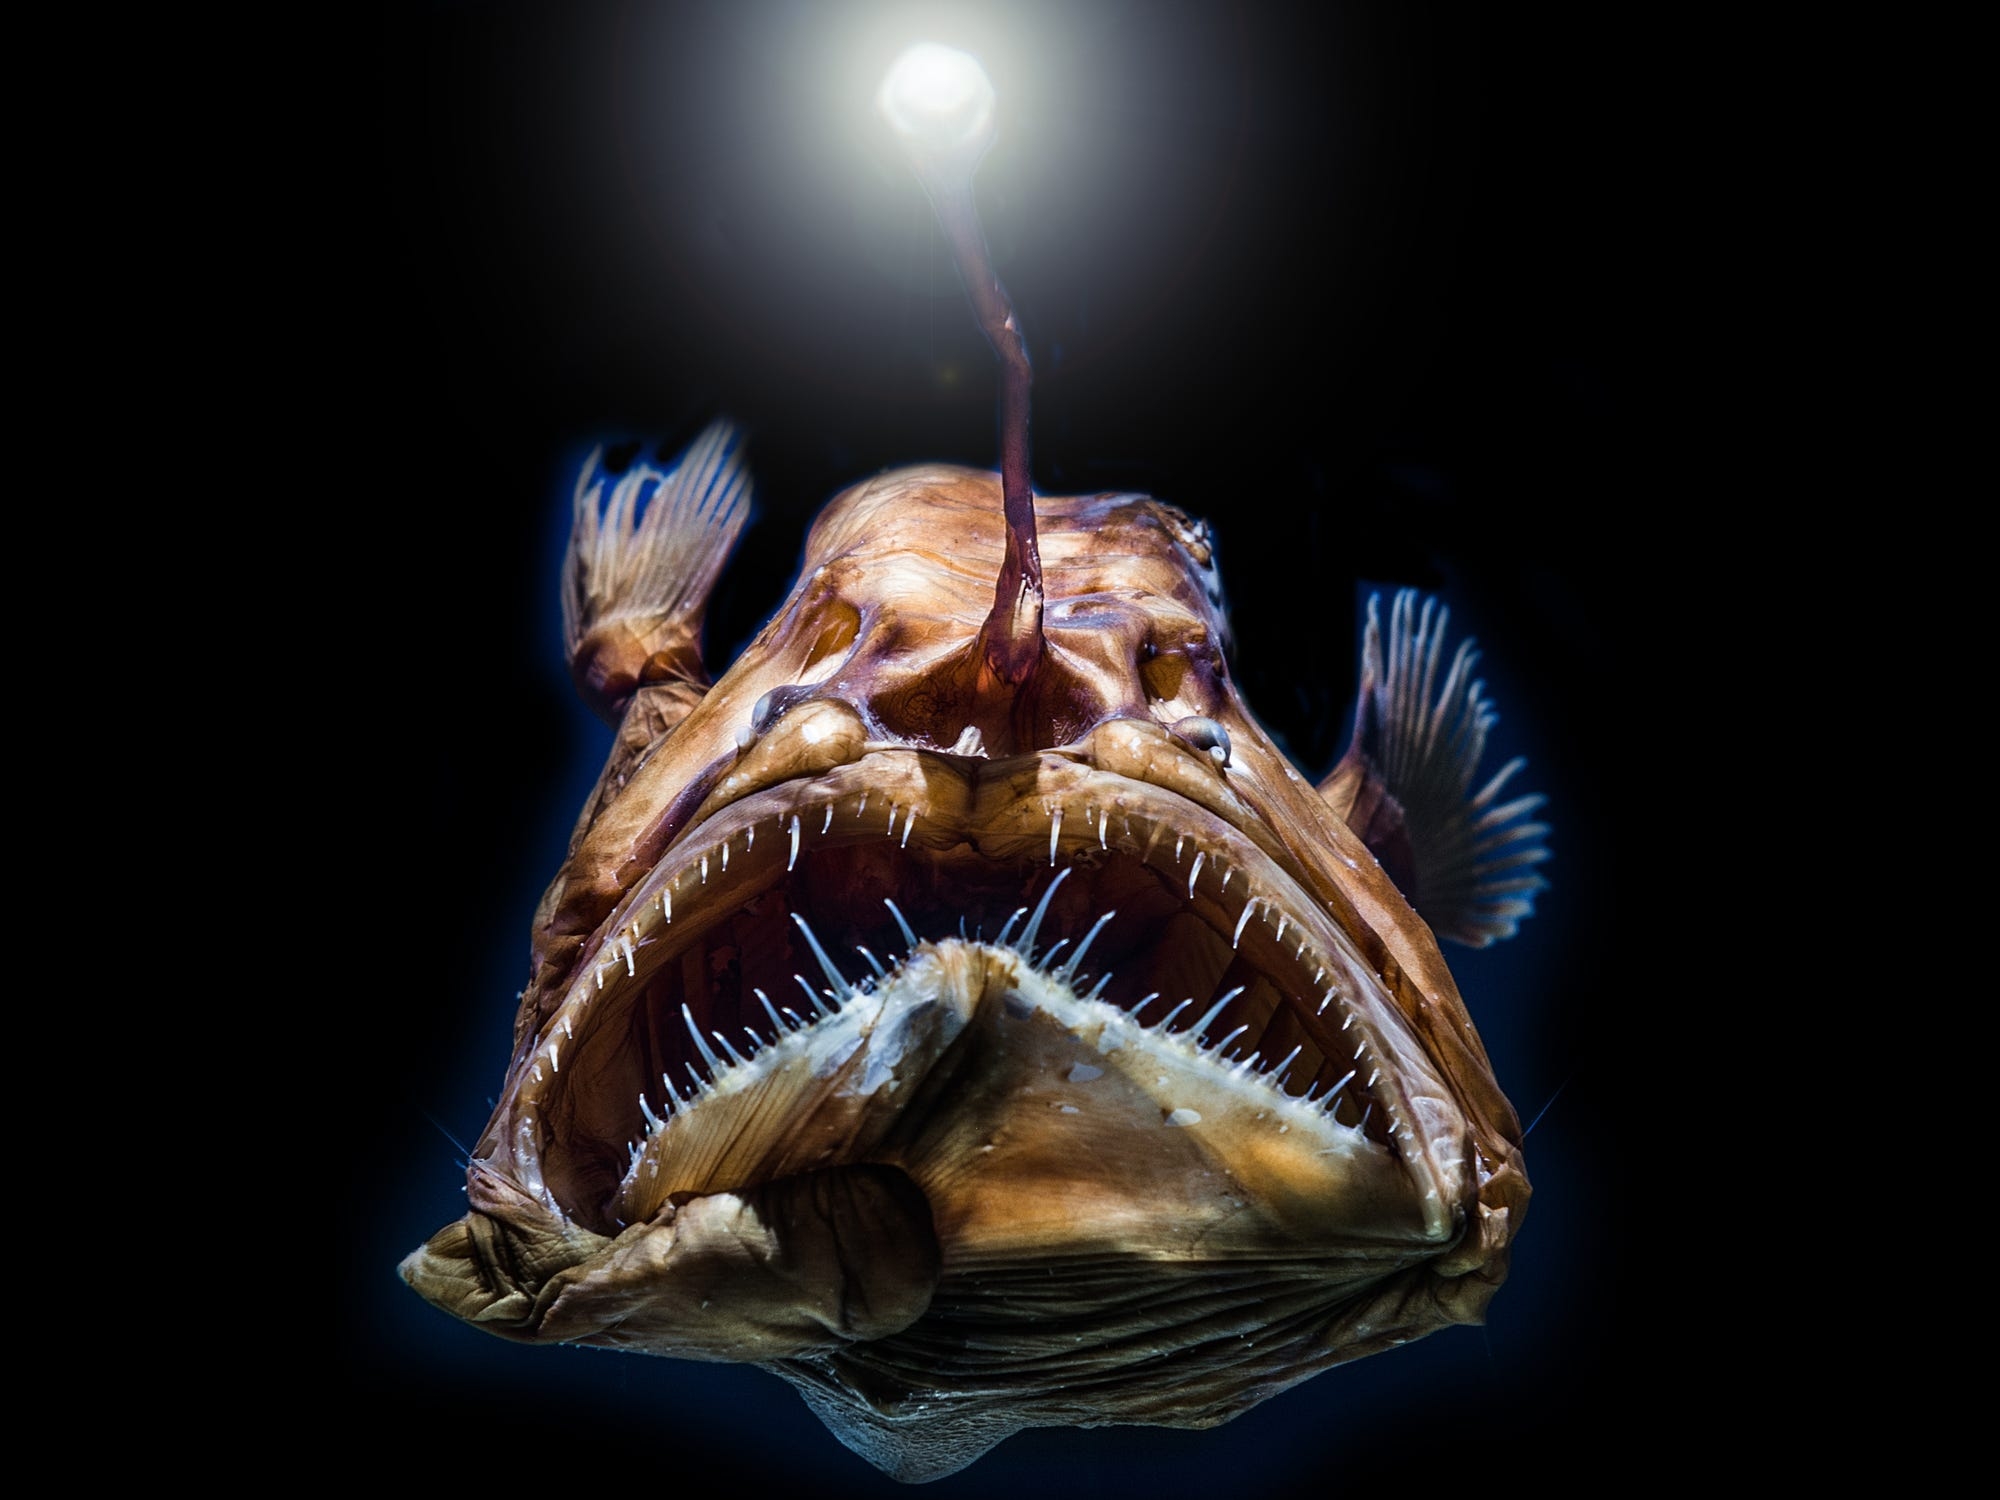 Animal deep. Глубоководная рыба удильщик. Европейский удильщик морской чёрт. Удильщики глубоководные рыбы самцы. Рыба удильщик рыба удильщик.